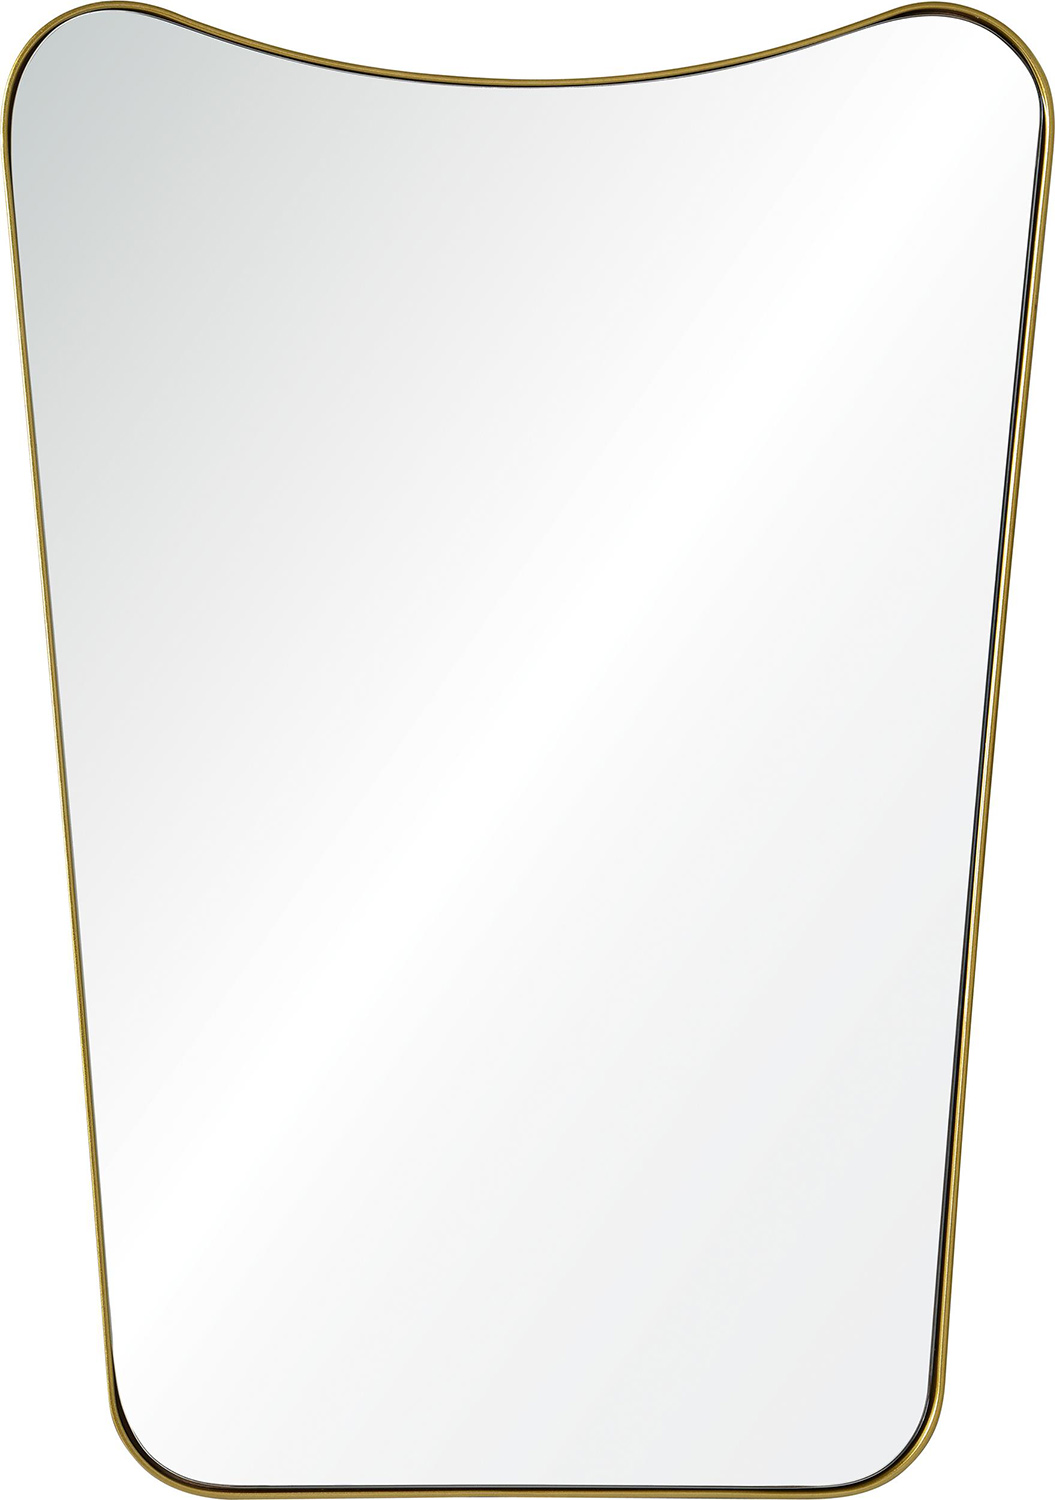 Ren-Wil Tufa Mirror - Gold powder Coated